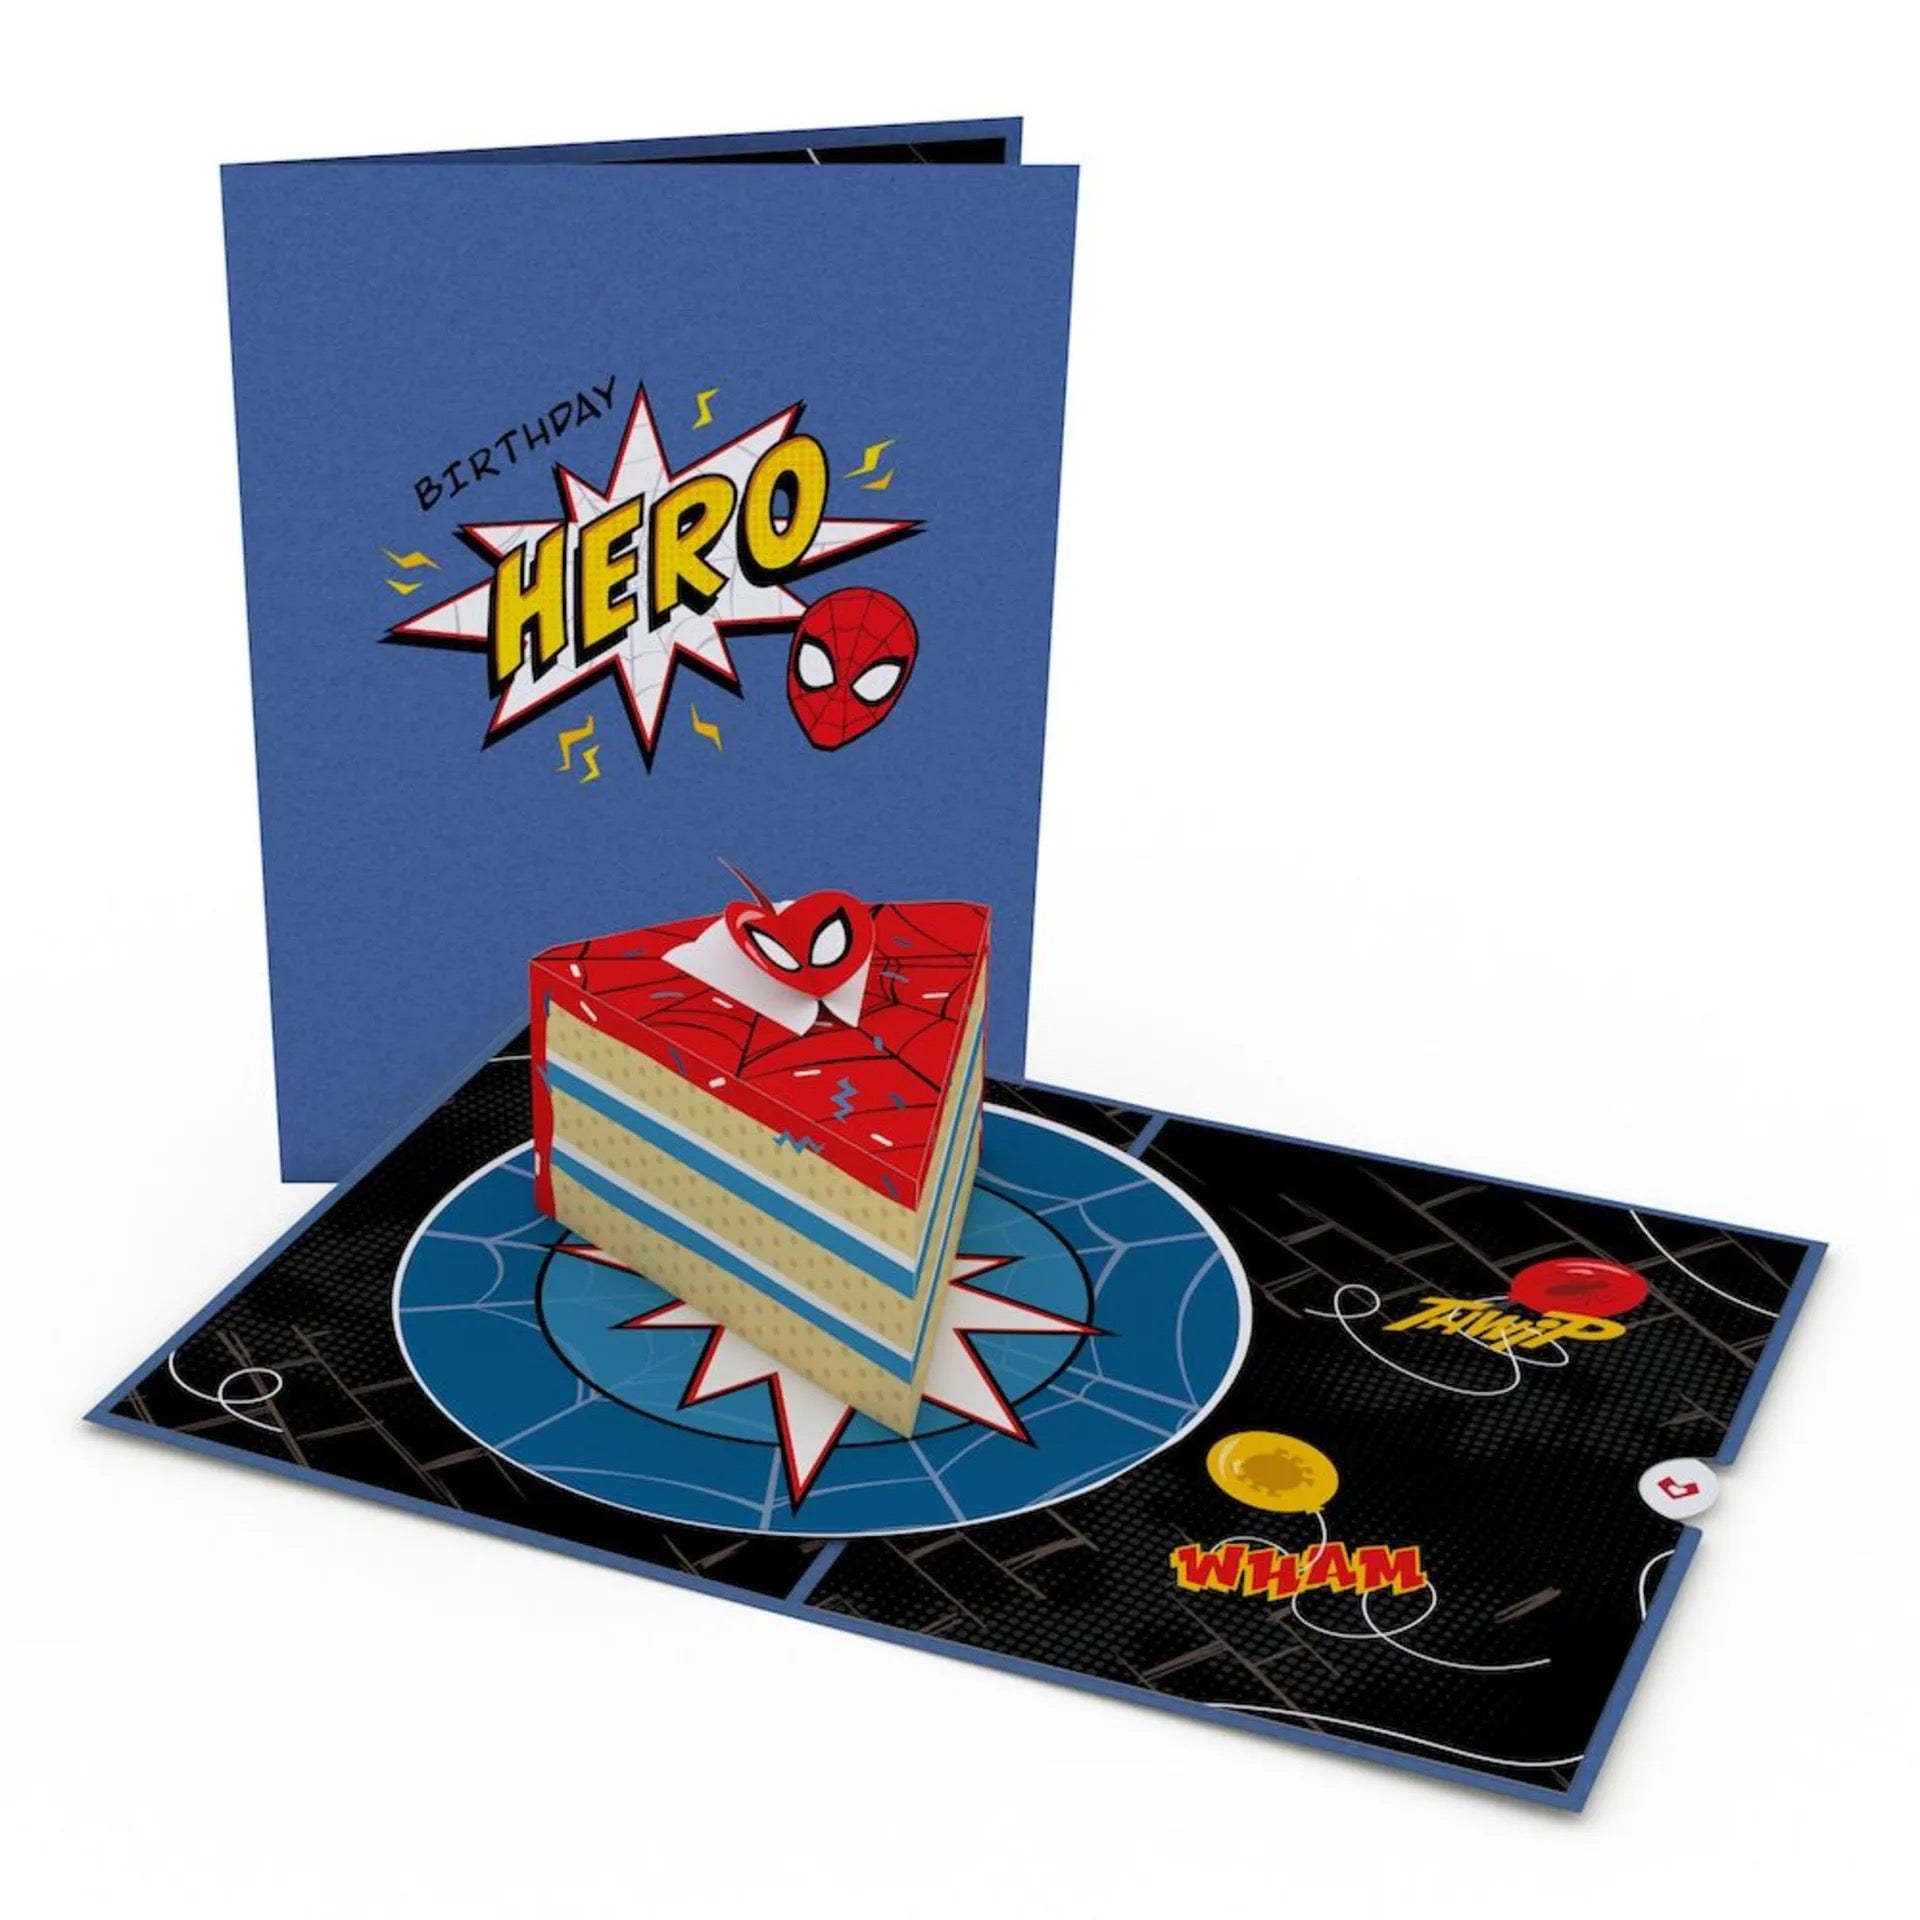 Playpop Card™: Marvel's Spider-Man Amazing Birthday – Lovepop